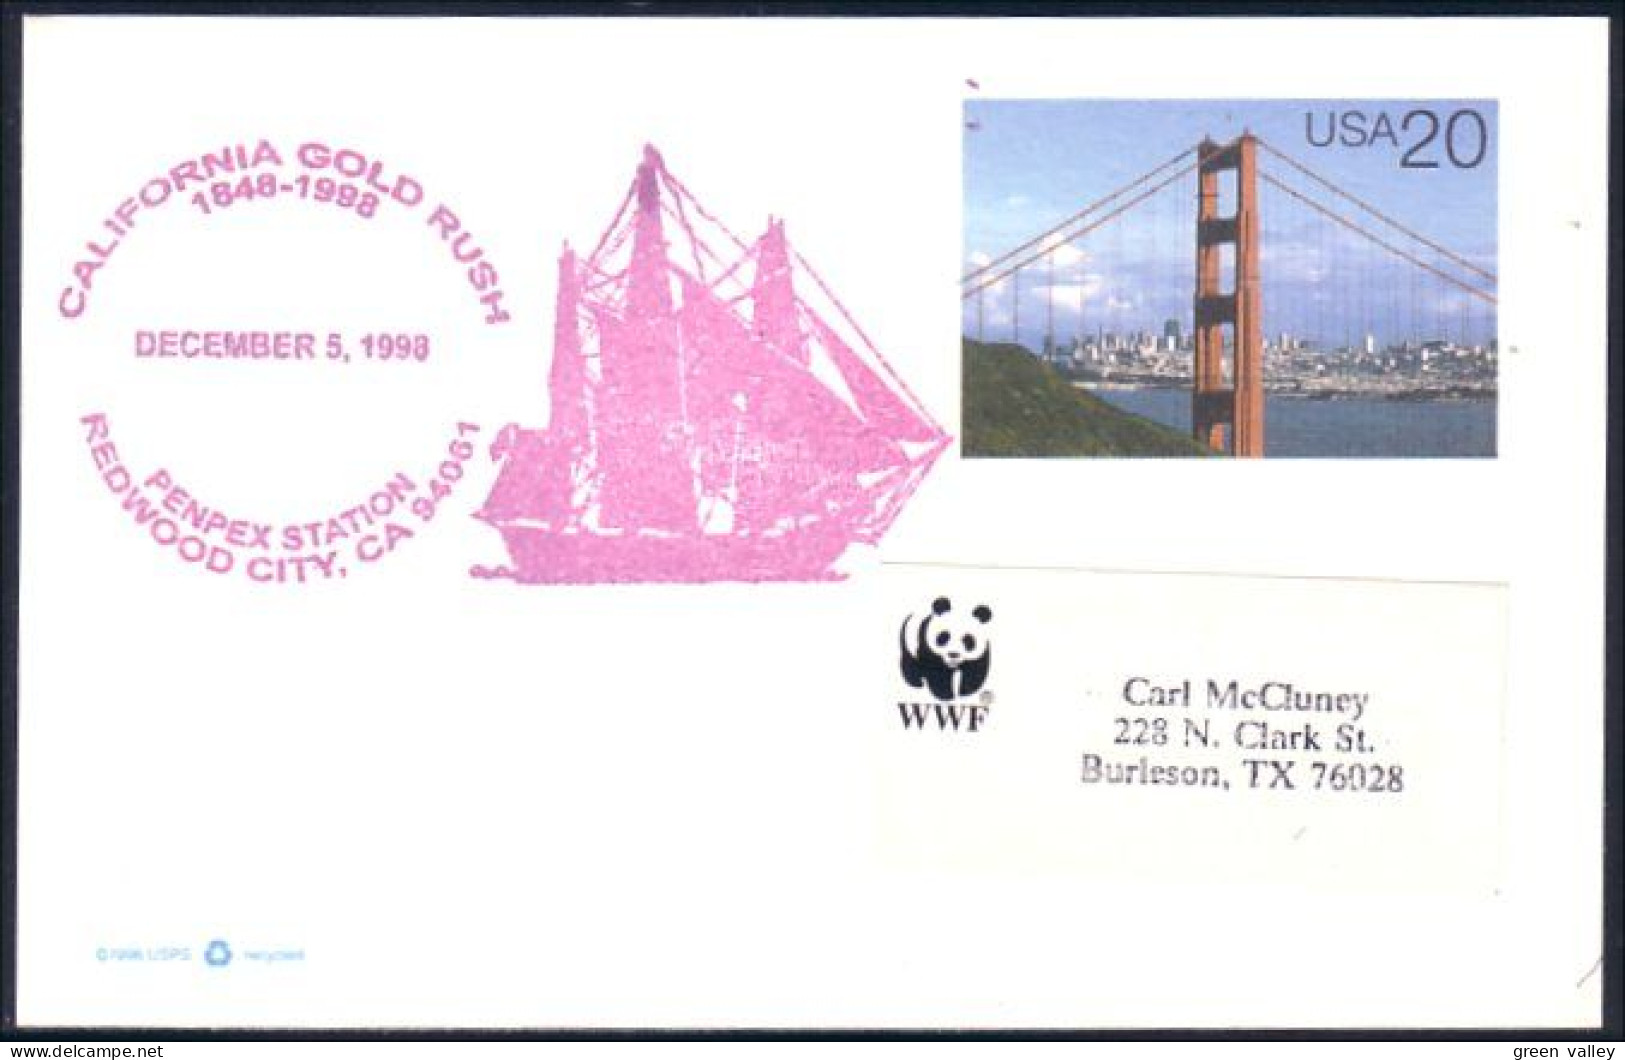 US Postcard California Gold Rush Redwood City, CA DEC 5, 1998 ( A91 712) - Minerals